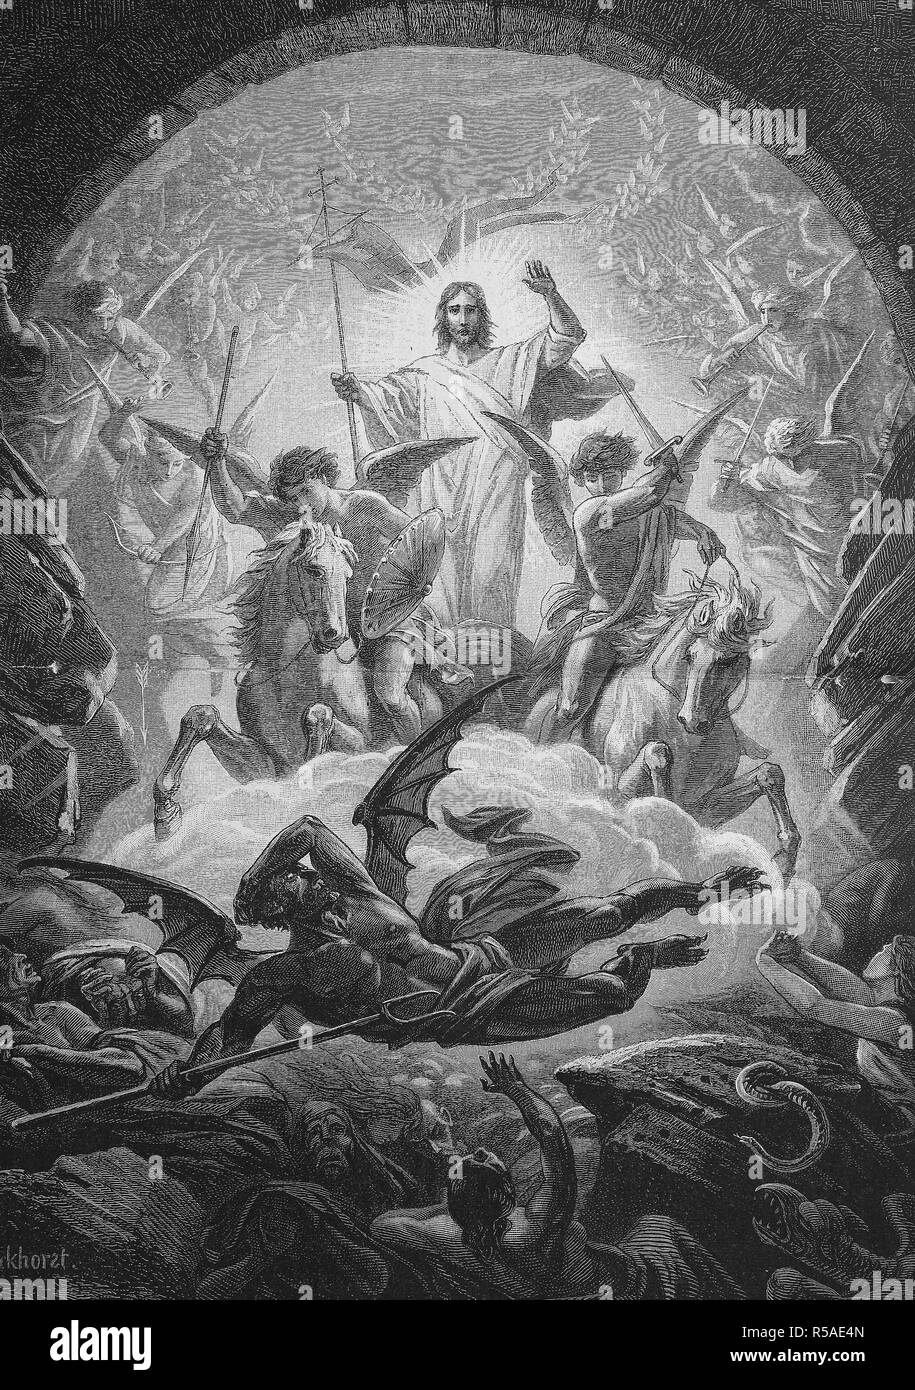 La descente en enfer, le hersage de Hellis la descente triomphale du Christ dans l'enfer entre l'époque de sa crucifixion Banque D'Images